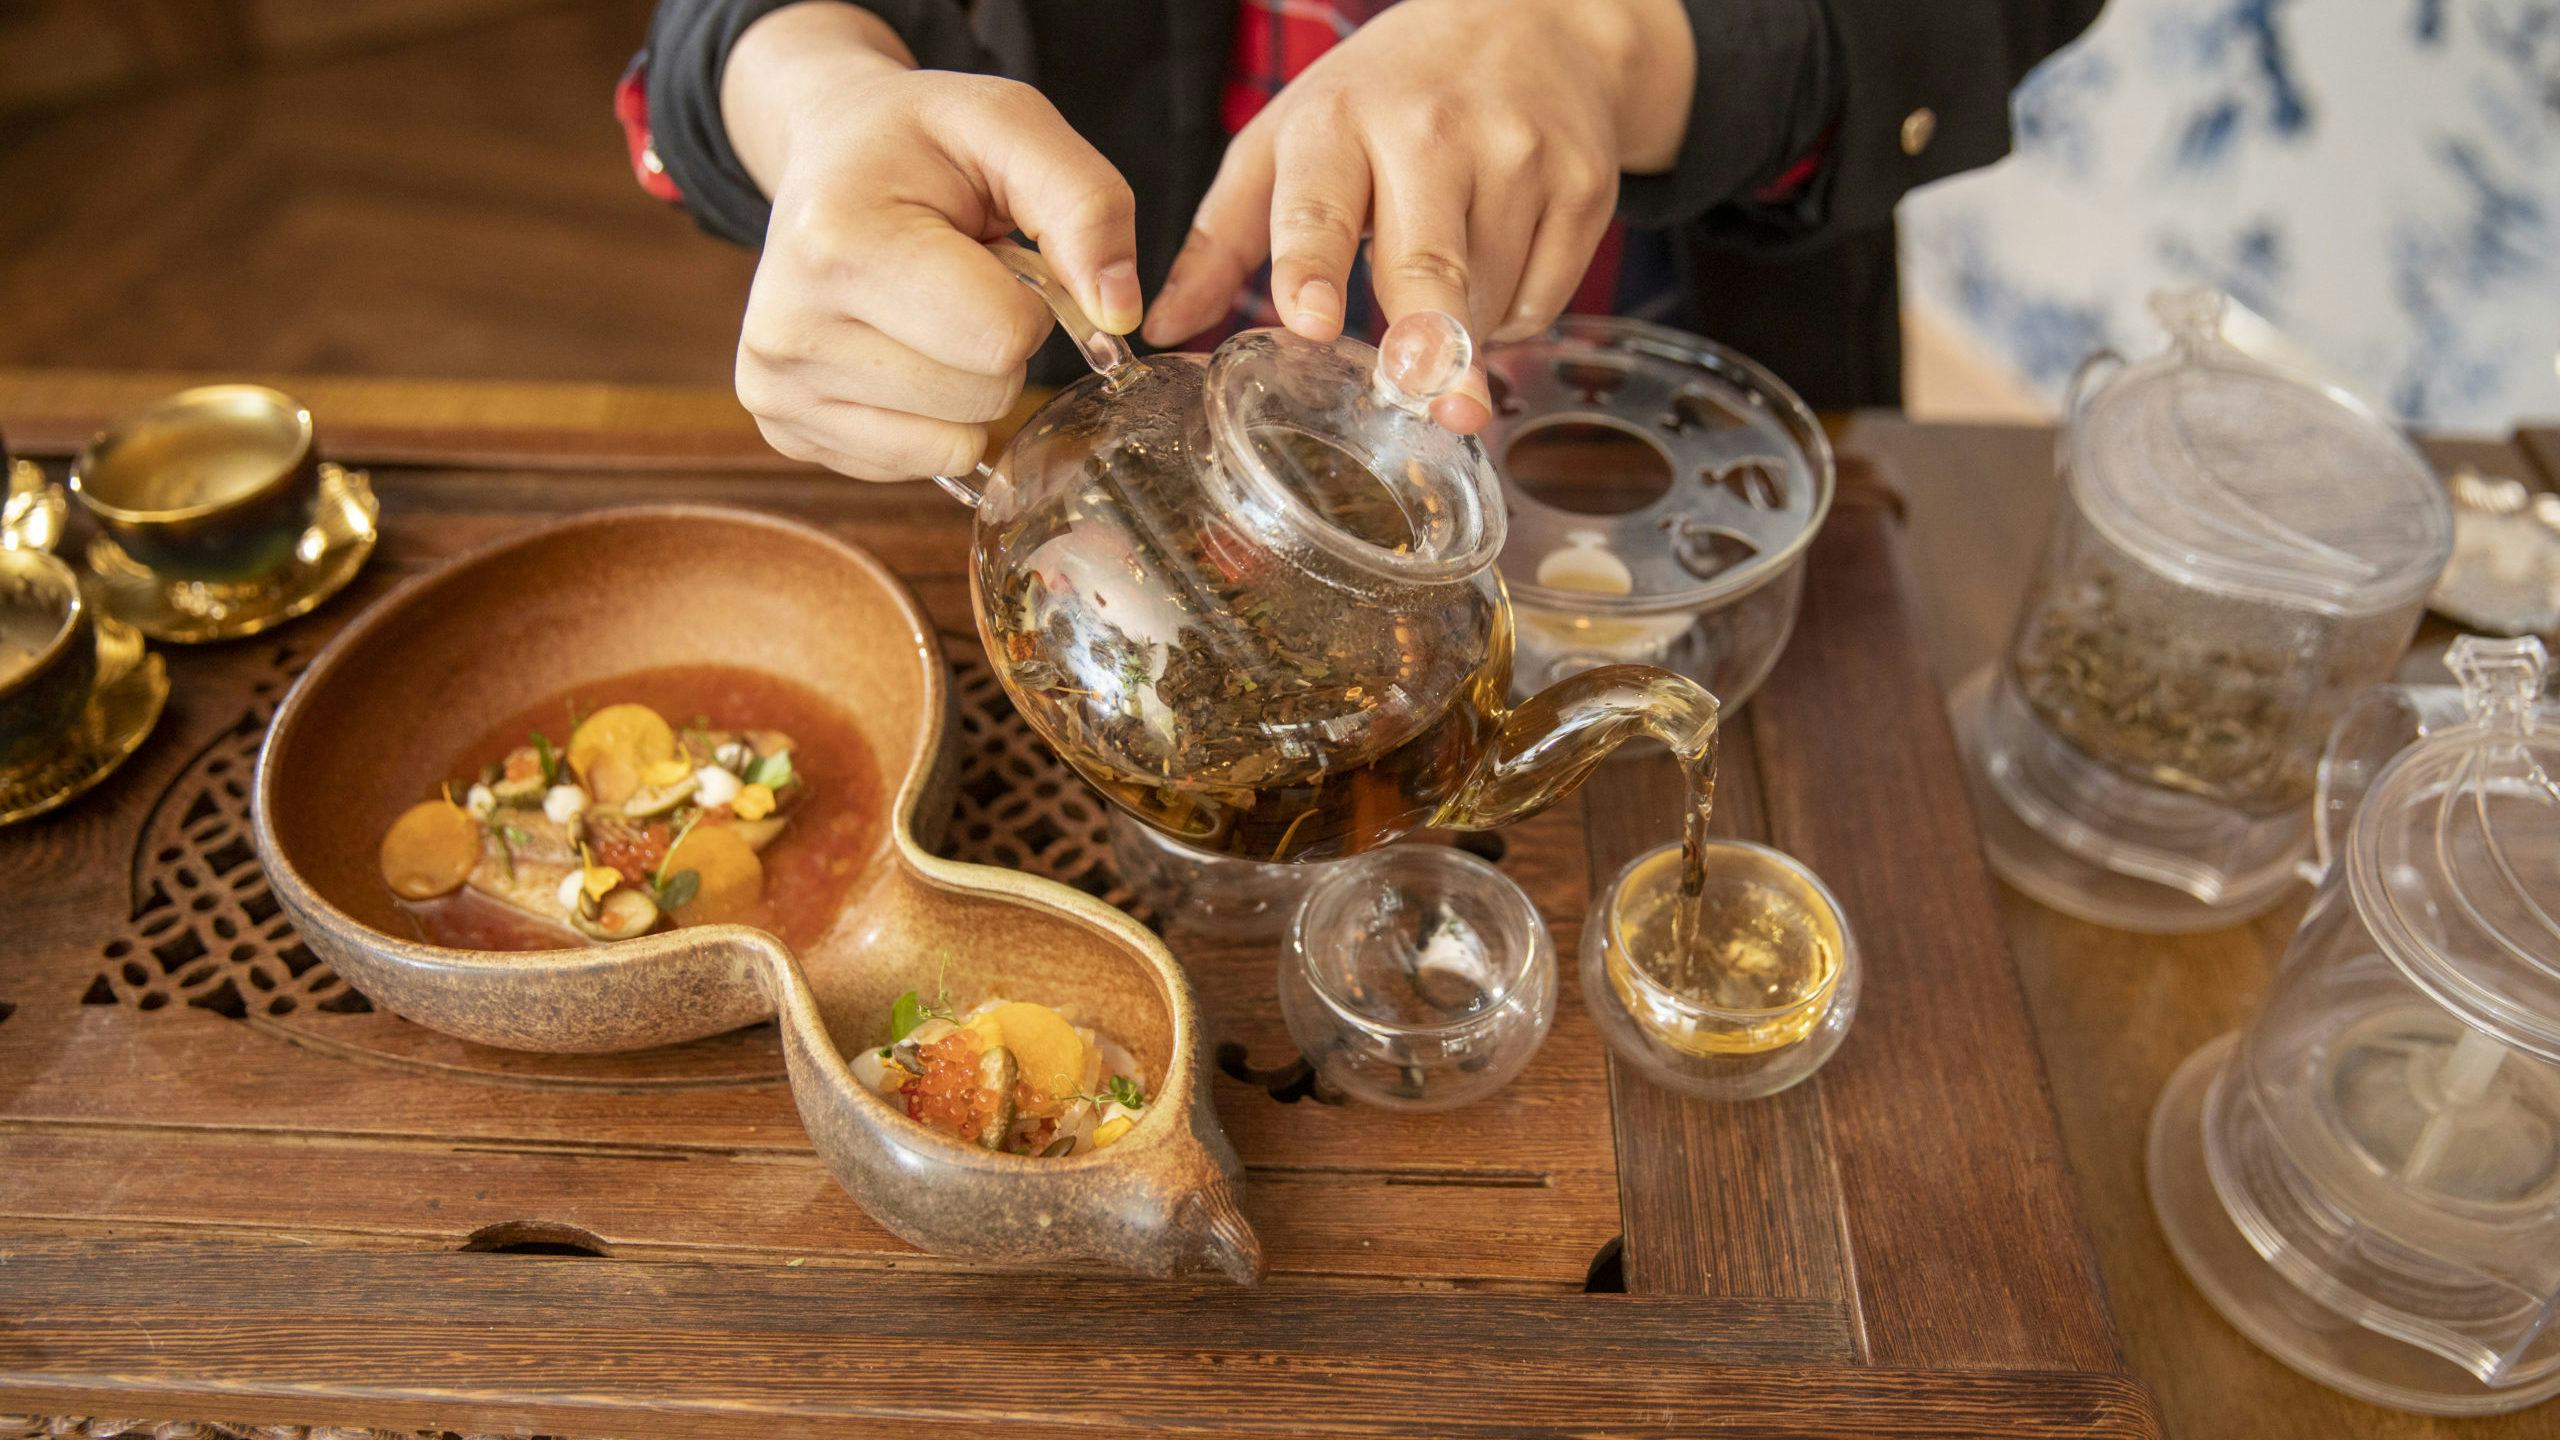 Zheng serveert een volledig thee-arrangement bij het menu. Foto: Roel Dijkstra Fotografie/Marc Heeman